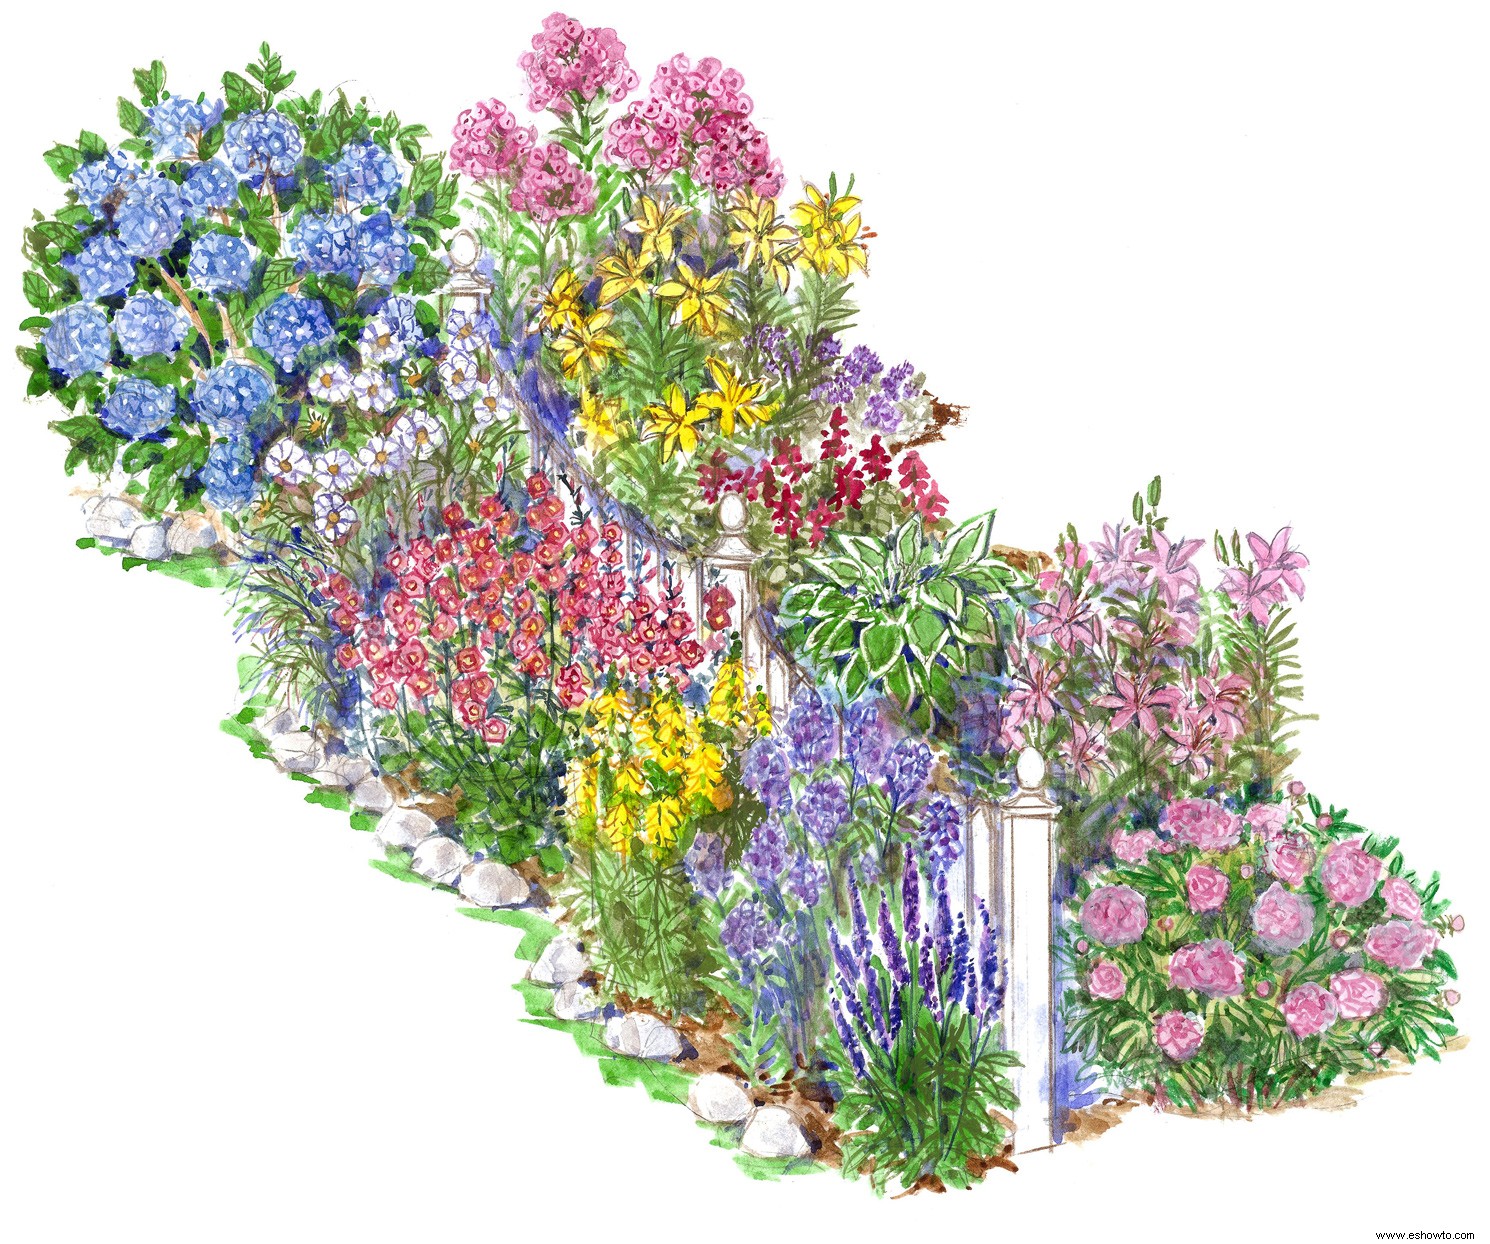 Plante este plan de jardín de estilo inglés para el patio delantero para lograr un atractivo exterior absolutamente impresionante 